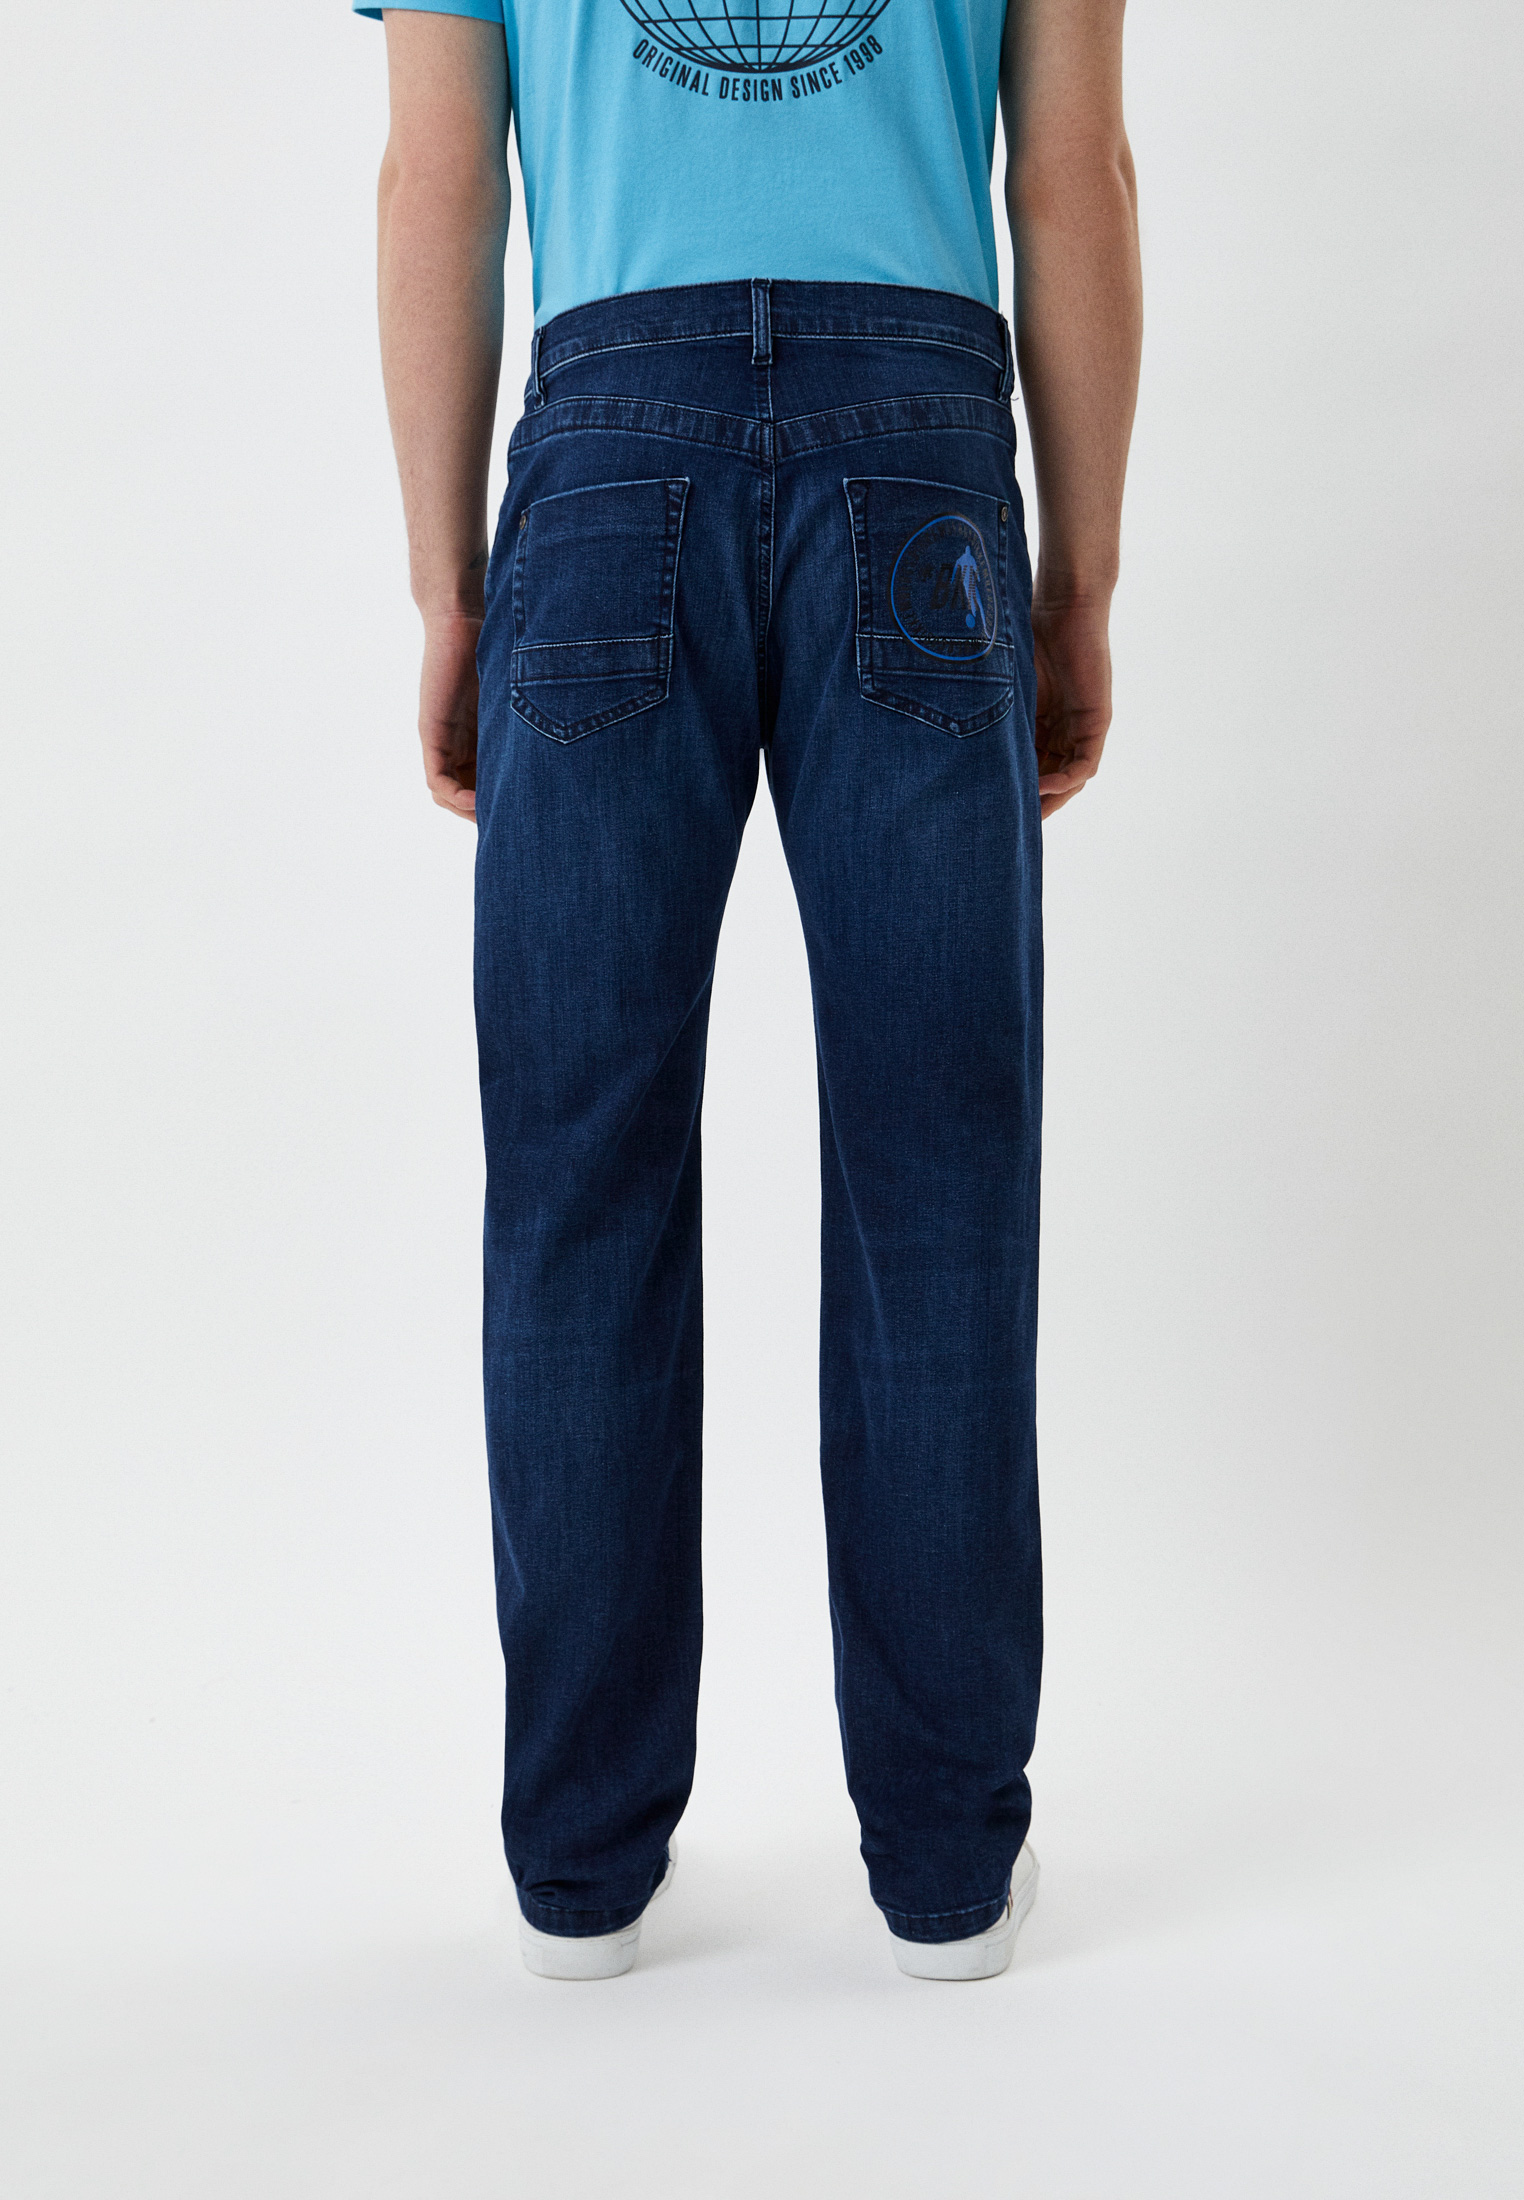 Мужские прямые джинсы Bikkembergs (Биккембергс) CQ11301S3511: изображение 3